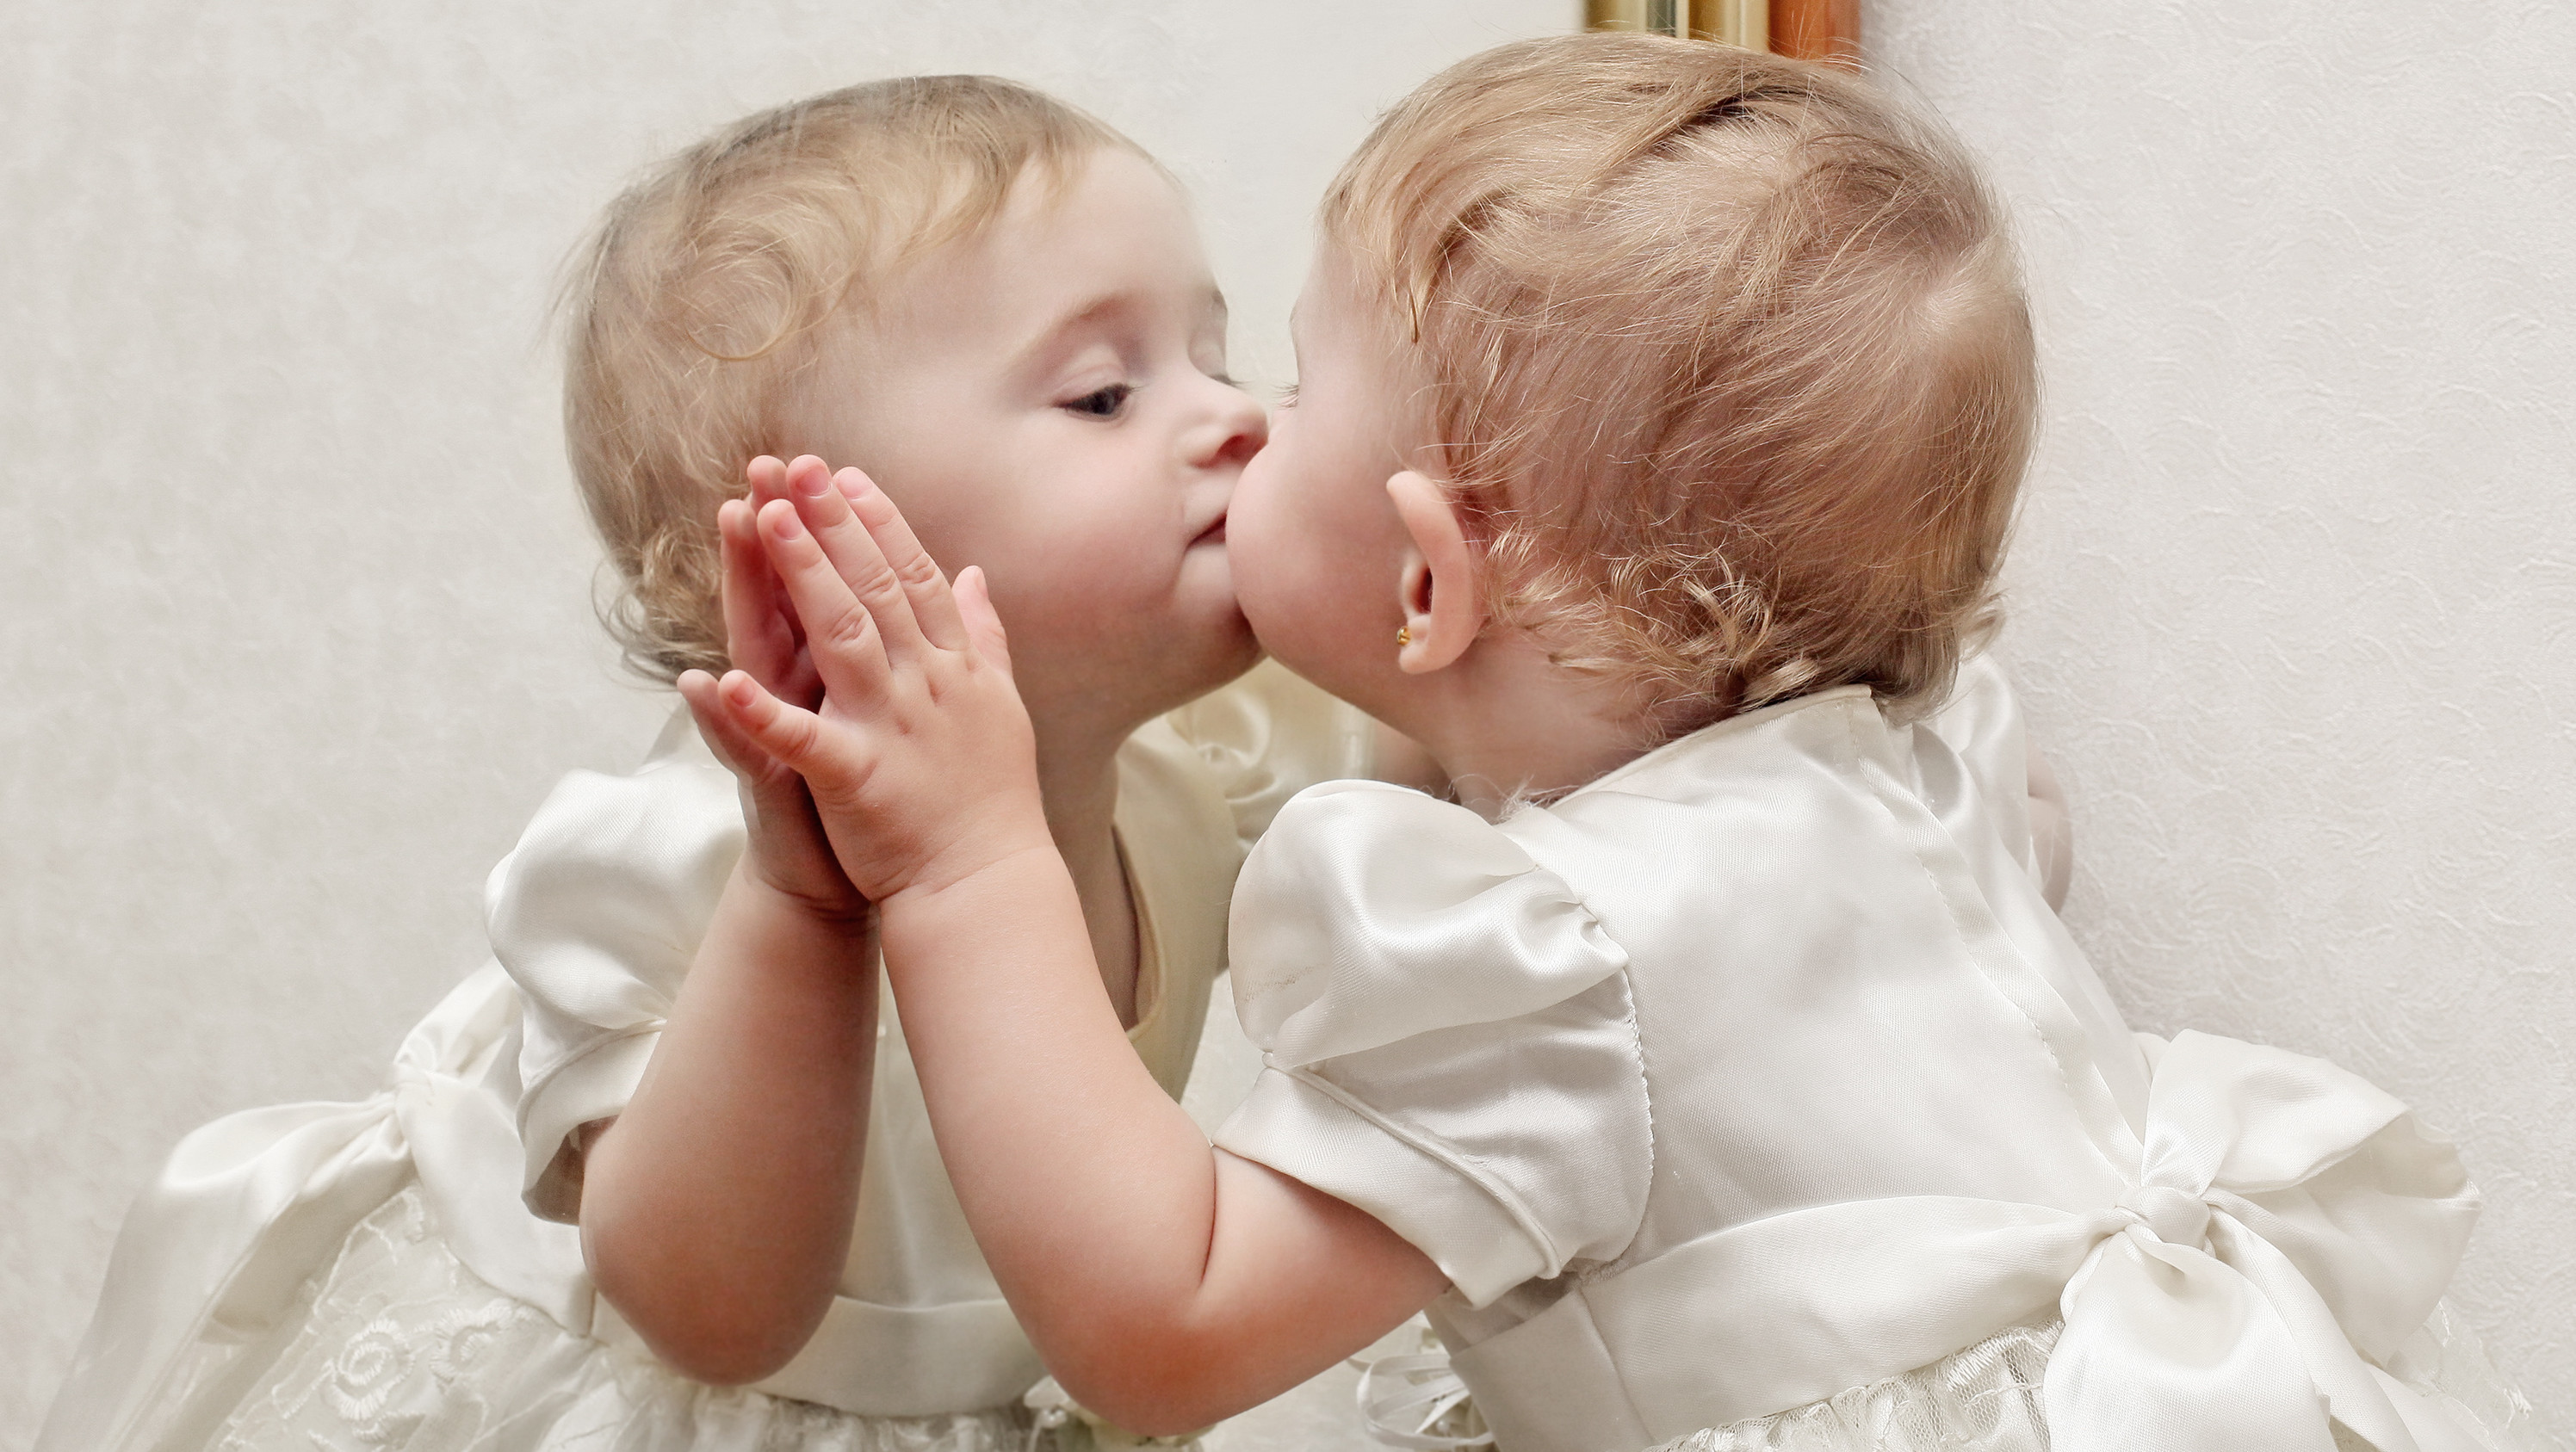 Mirror kissing